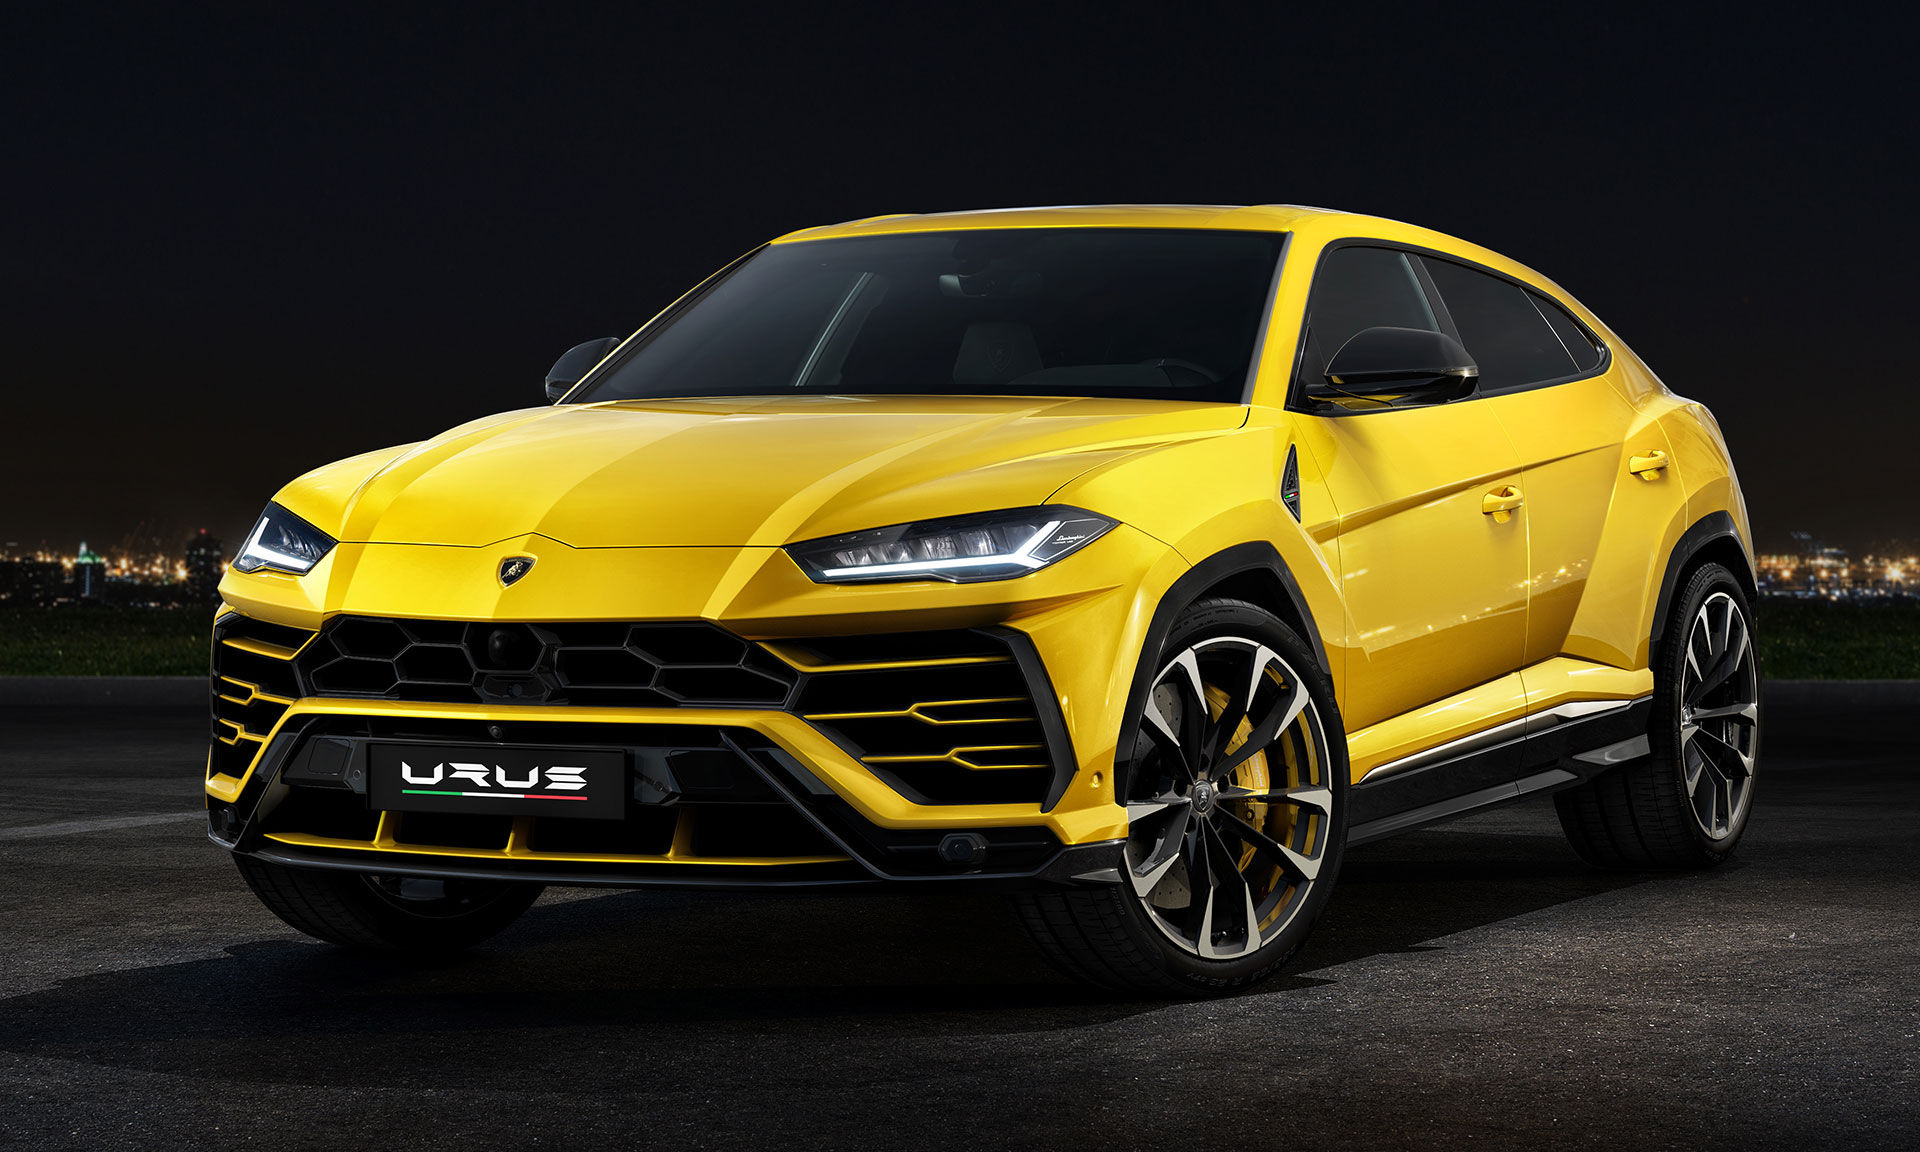 Lamborghini oficiálně představilo své první SUV jménem Urus